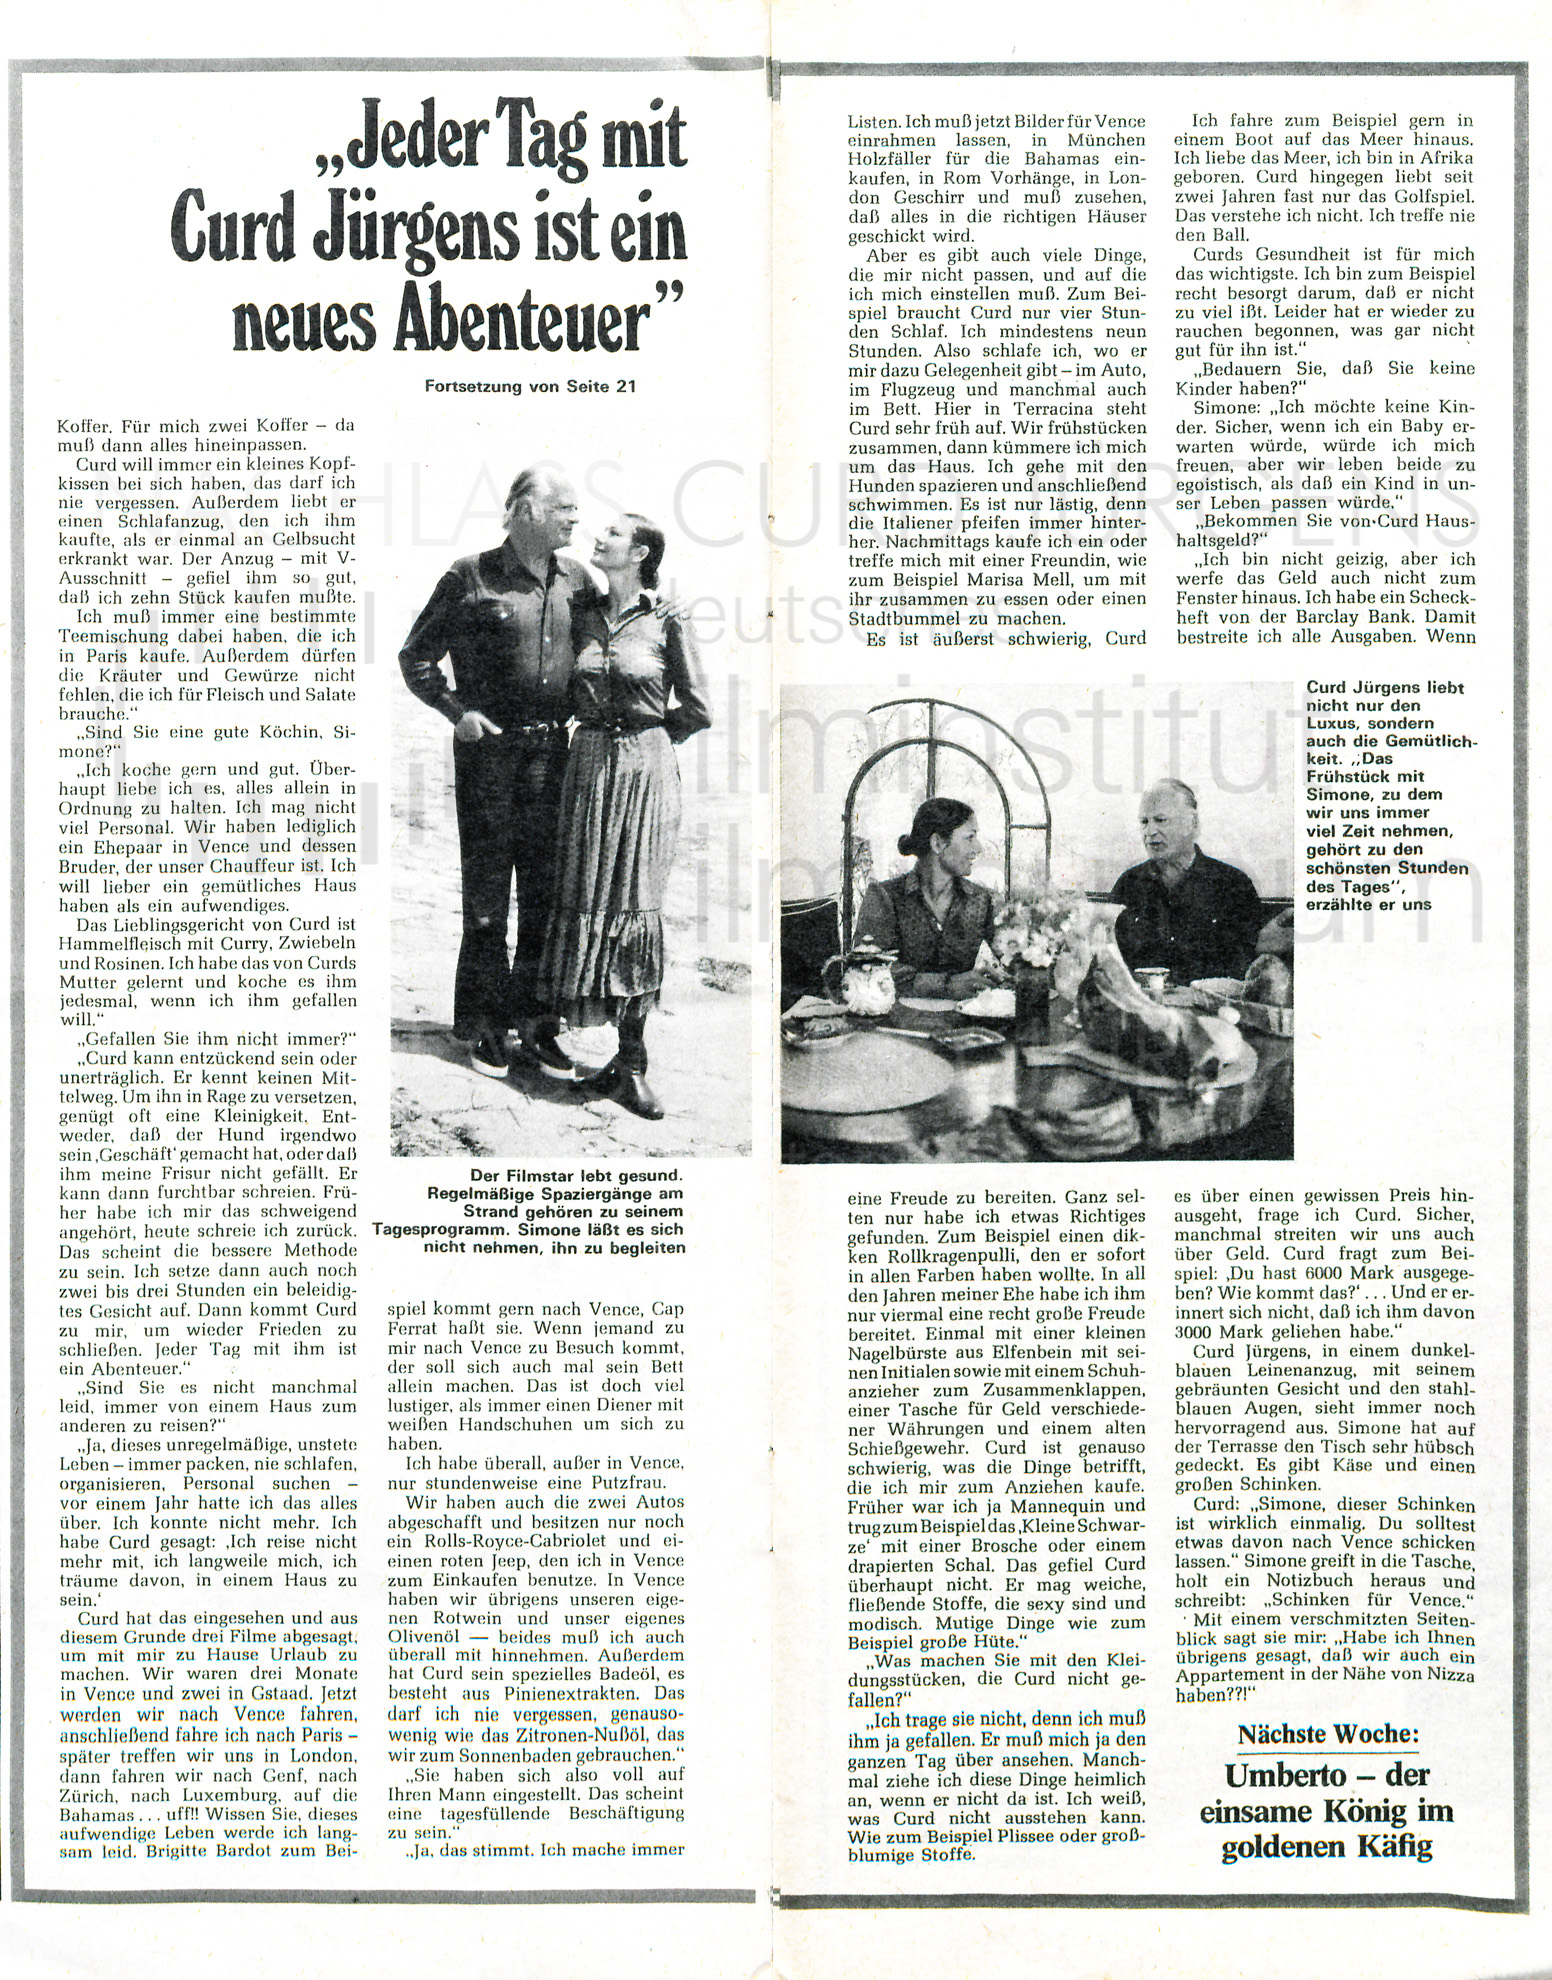 DAS NEUE BLATT: "Jeder Tag mit Curd Jürgens ist ein neues Abenteuer", 19.6.1971